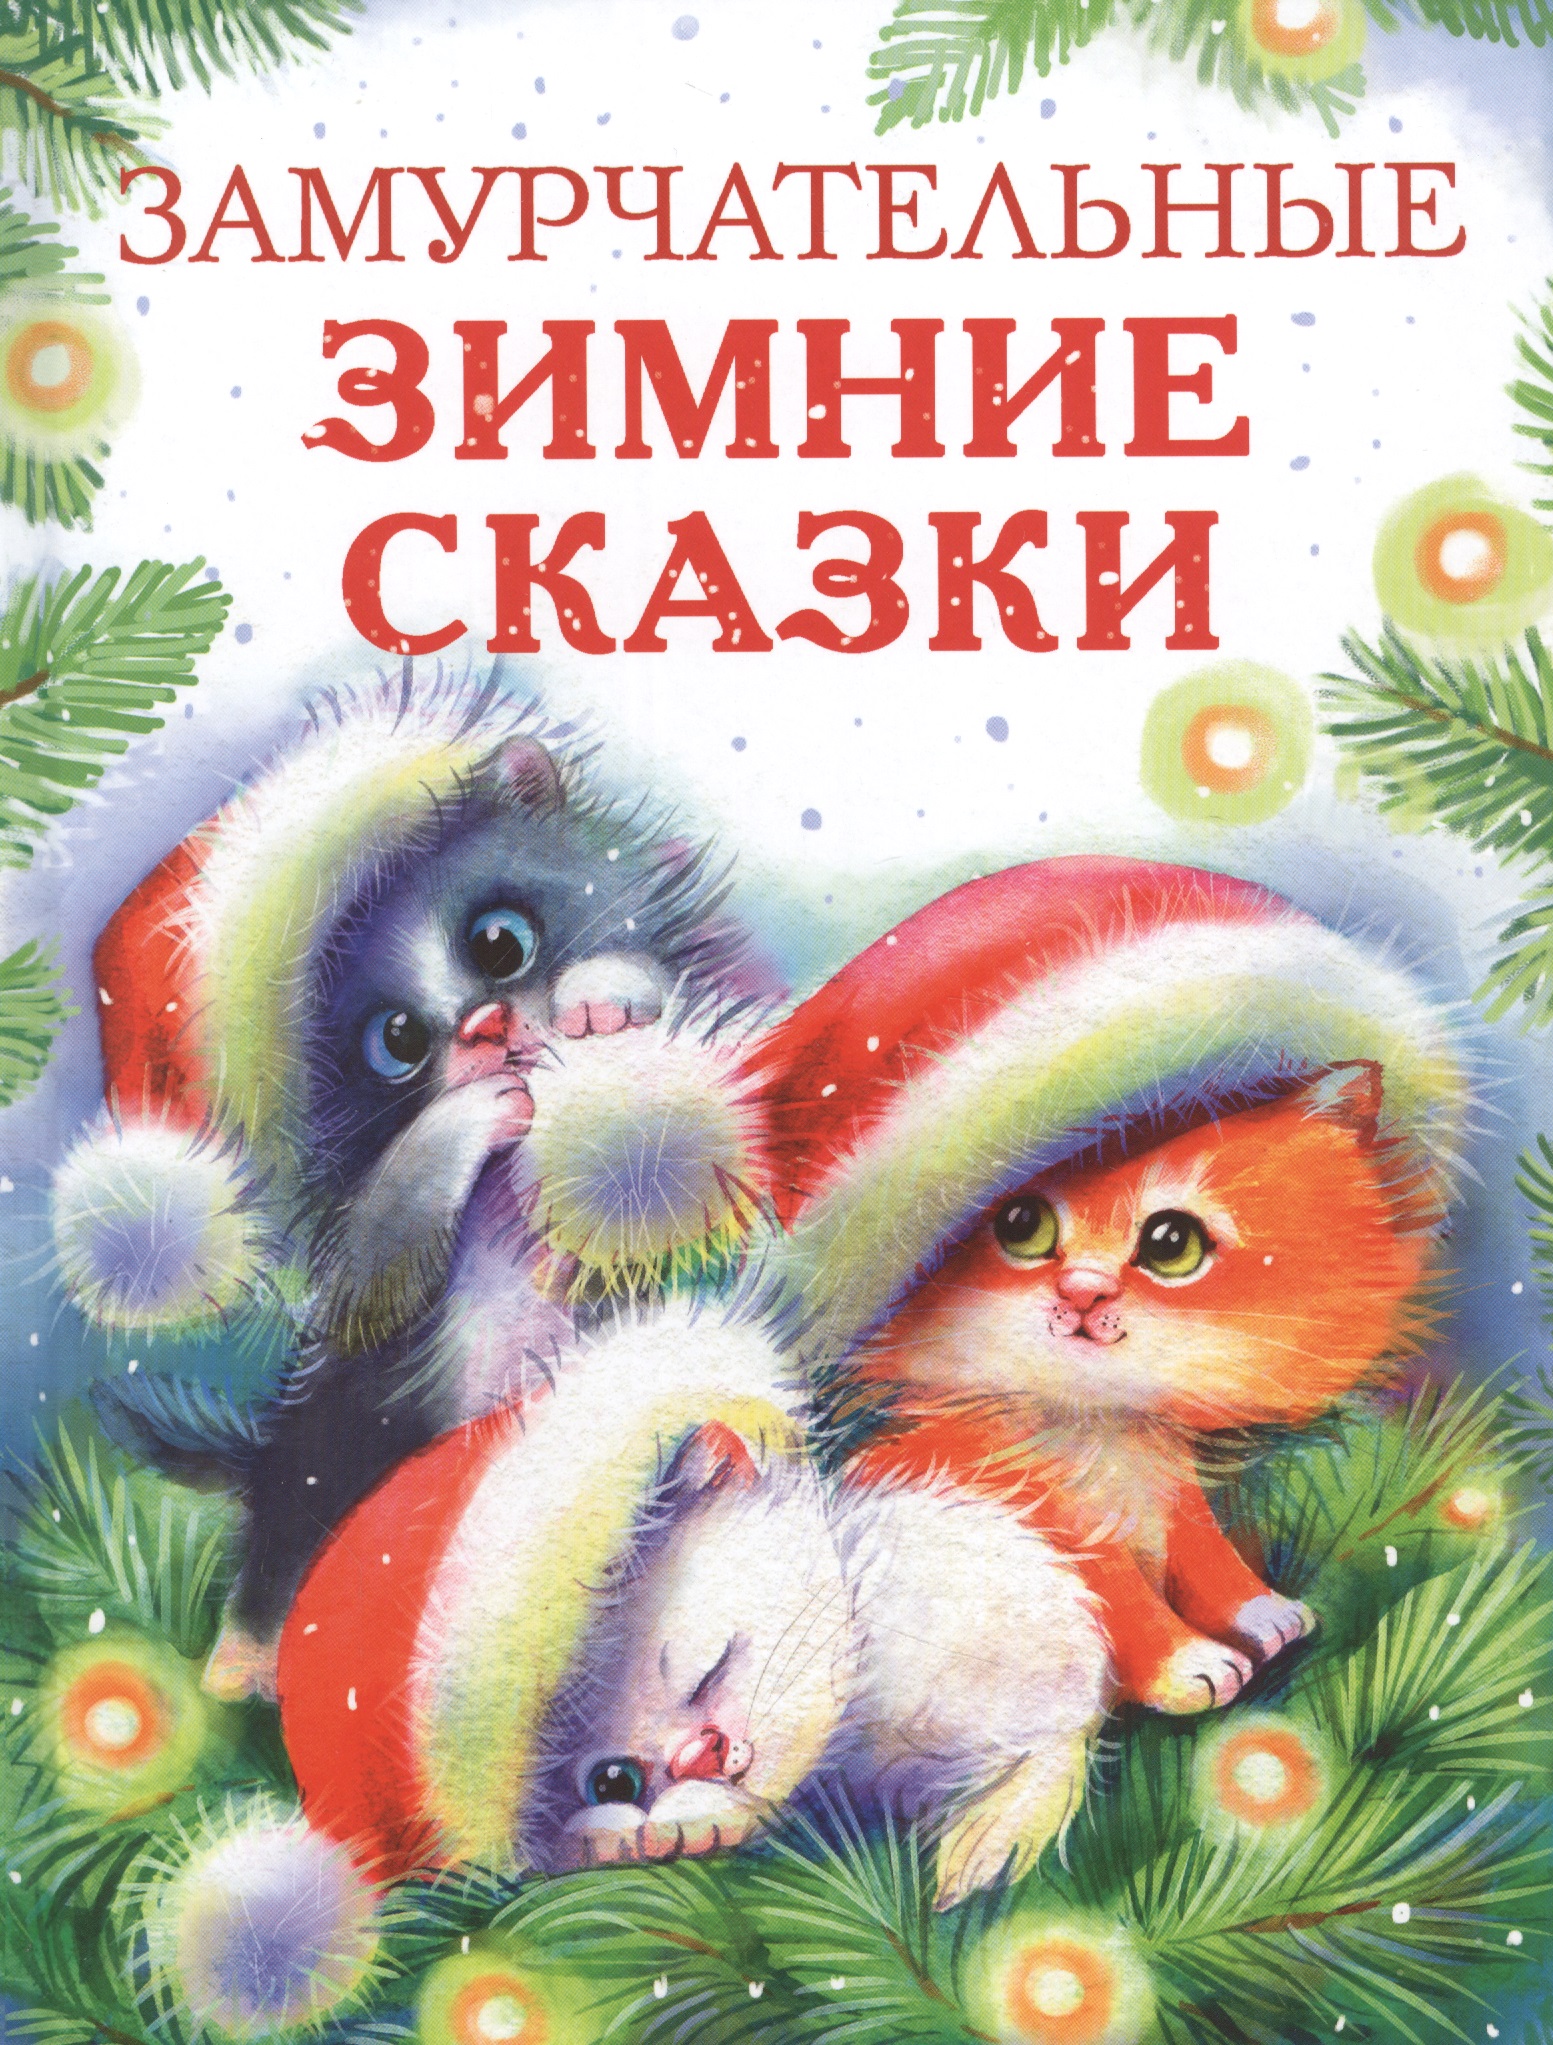 котенок рыжик 14 16 21 Замурчательные зимние сказки